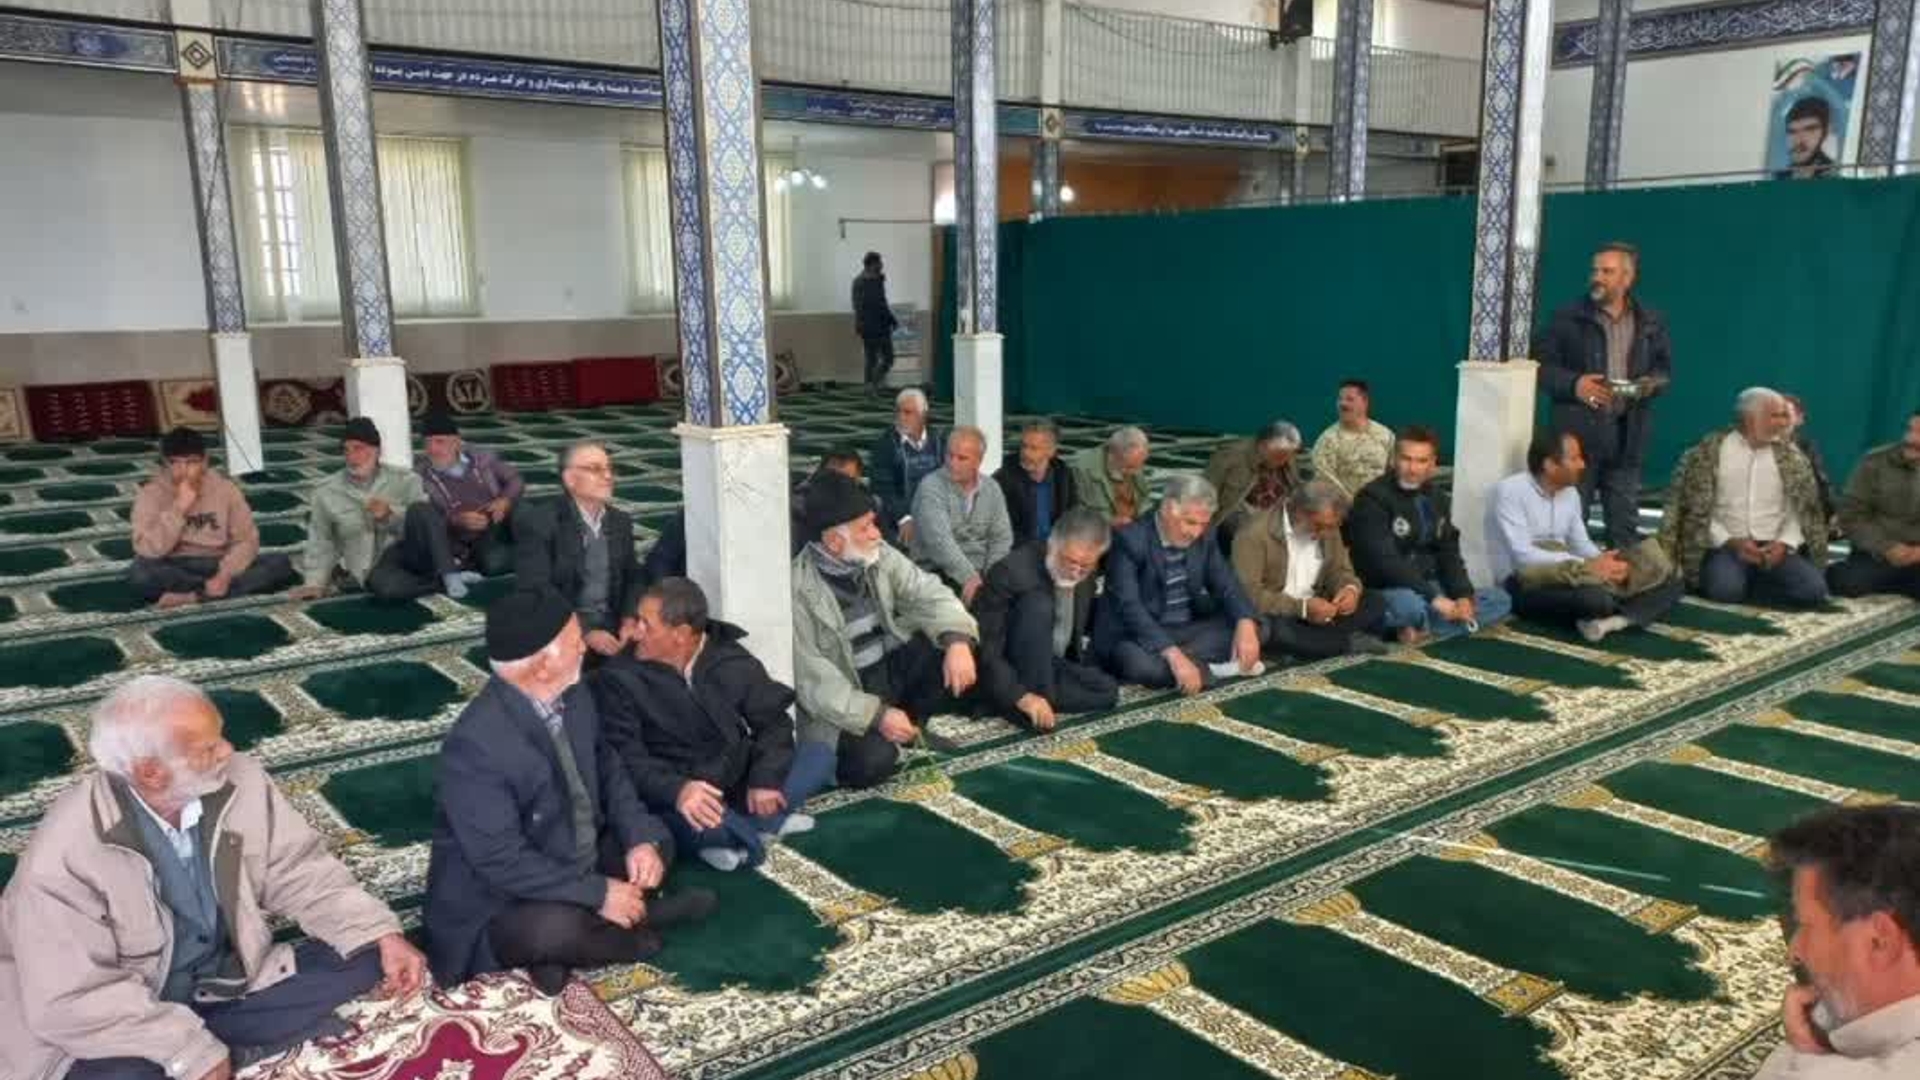 برگزاری میز خدمت در روستای زنگارک توسط مسئولین شهرستان فراهان به مناسبت فرارسیدن دهه مبارک فجر